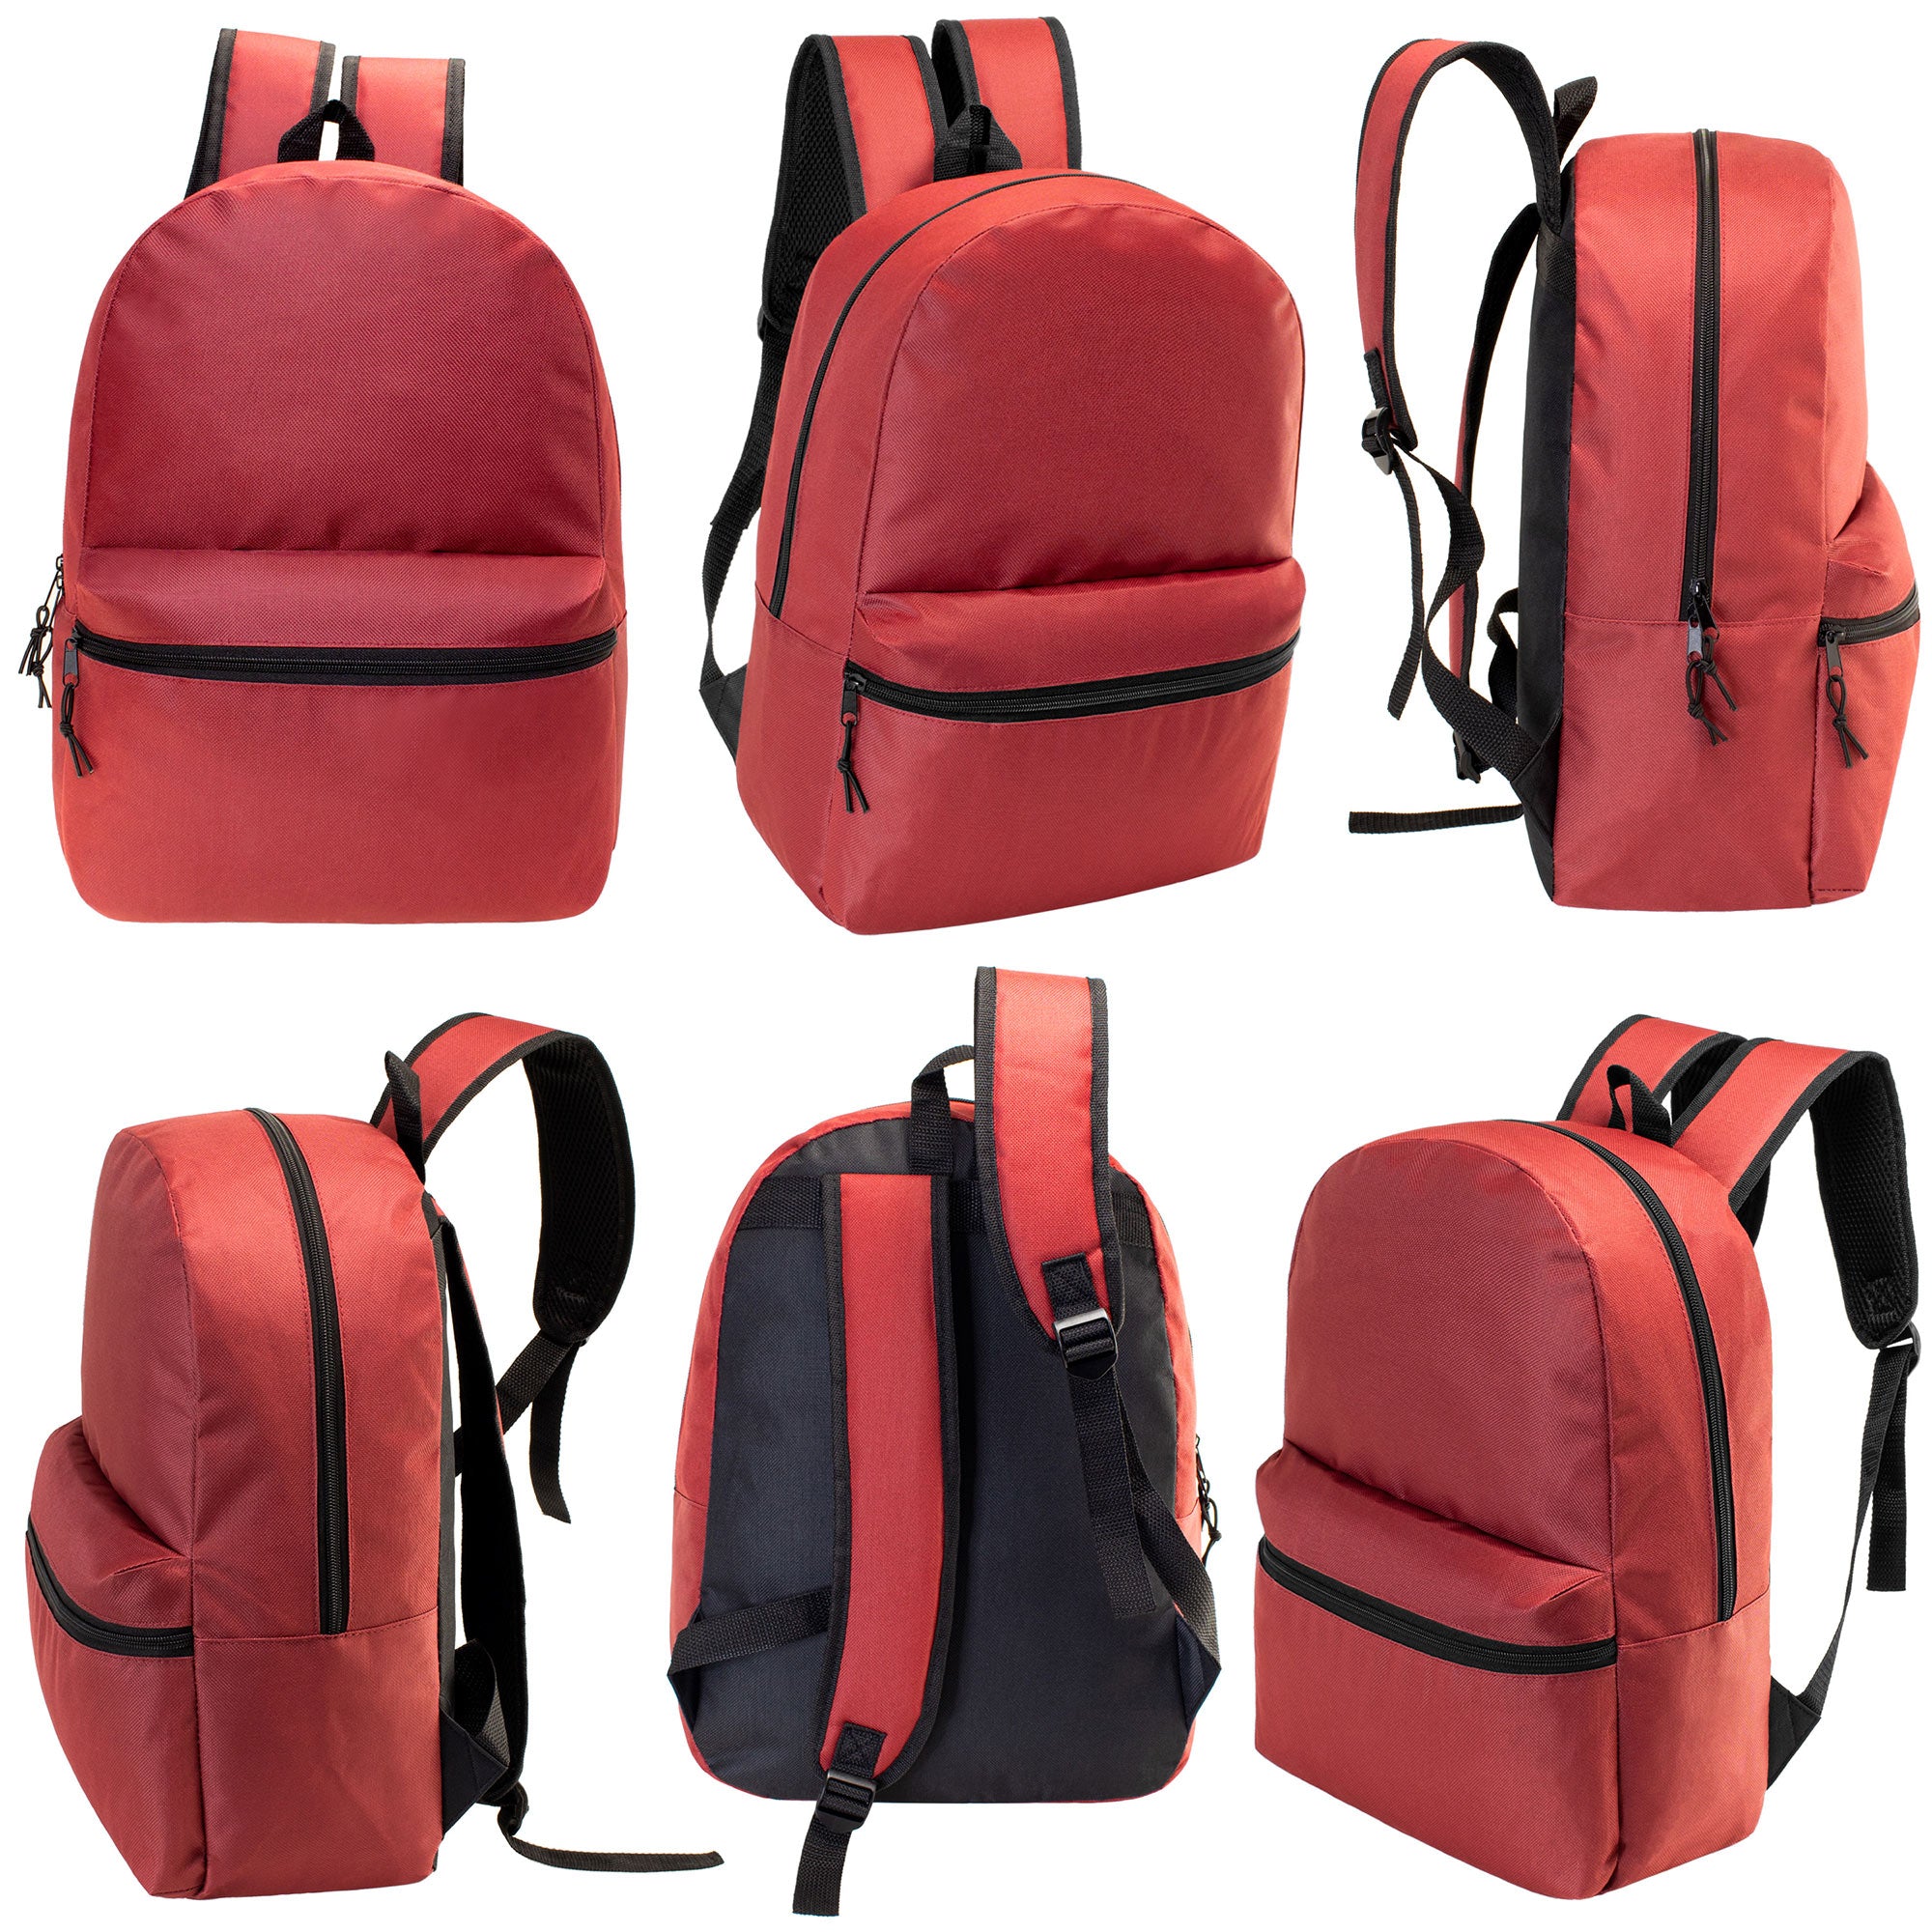 17 inch wholesale bulk backpacks for kids